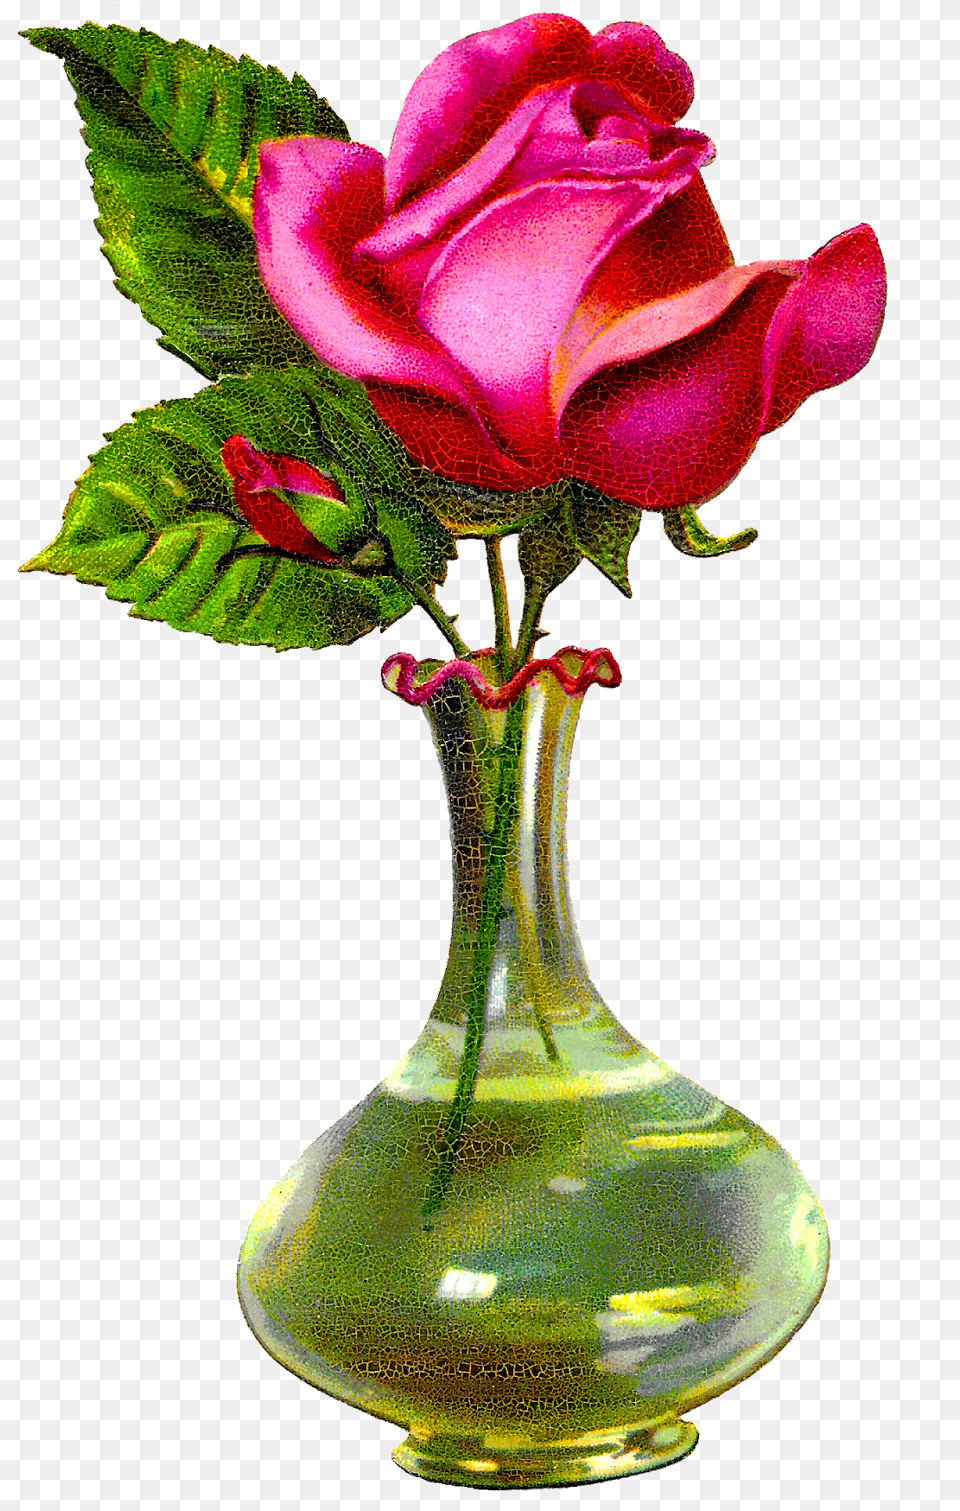 Antique Images Pink Rose Rose Flower With Vase, Jar, Plant, Pottery, Flower Arrangement Free Transparent Png